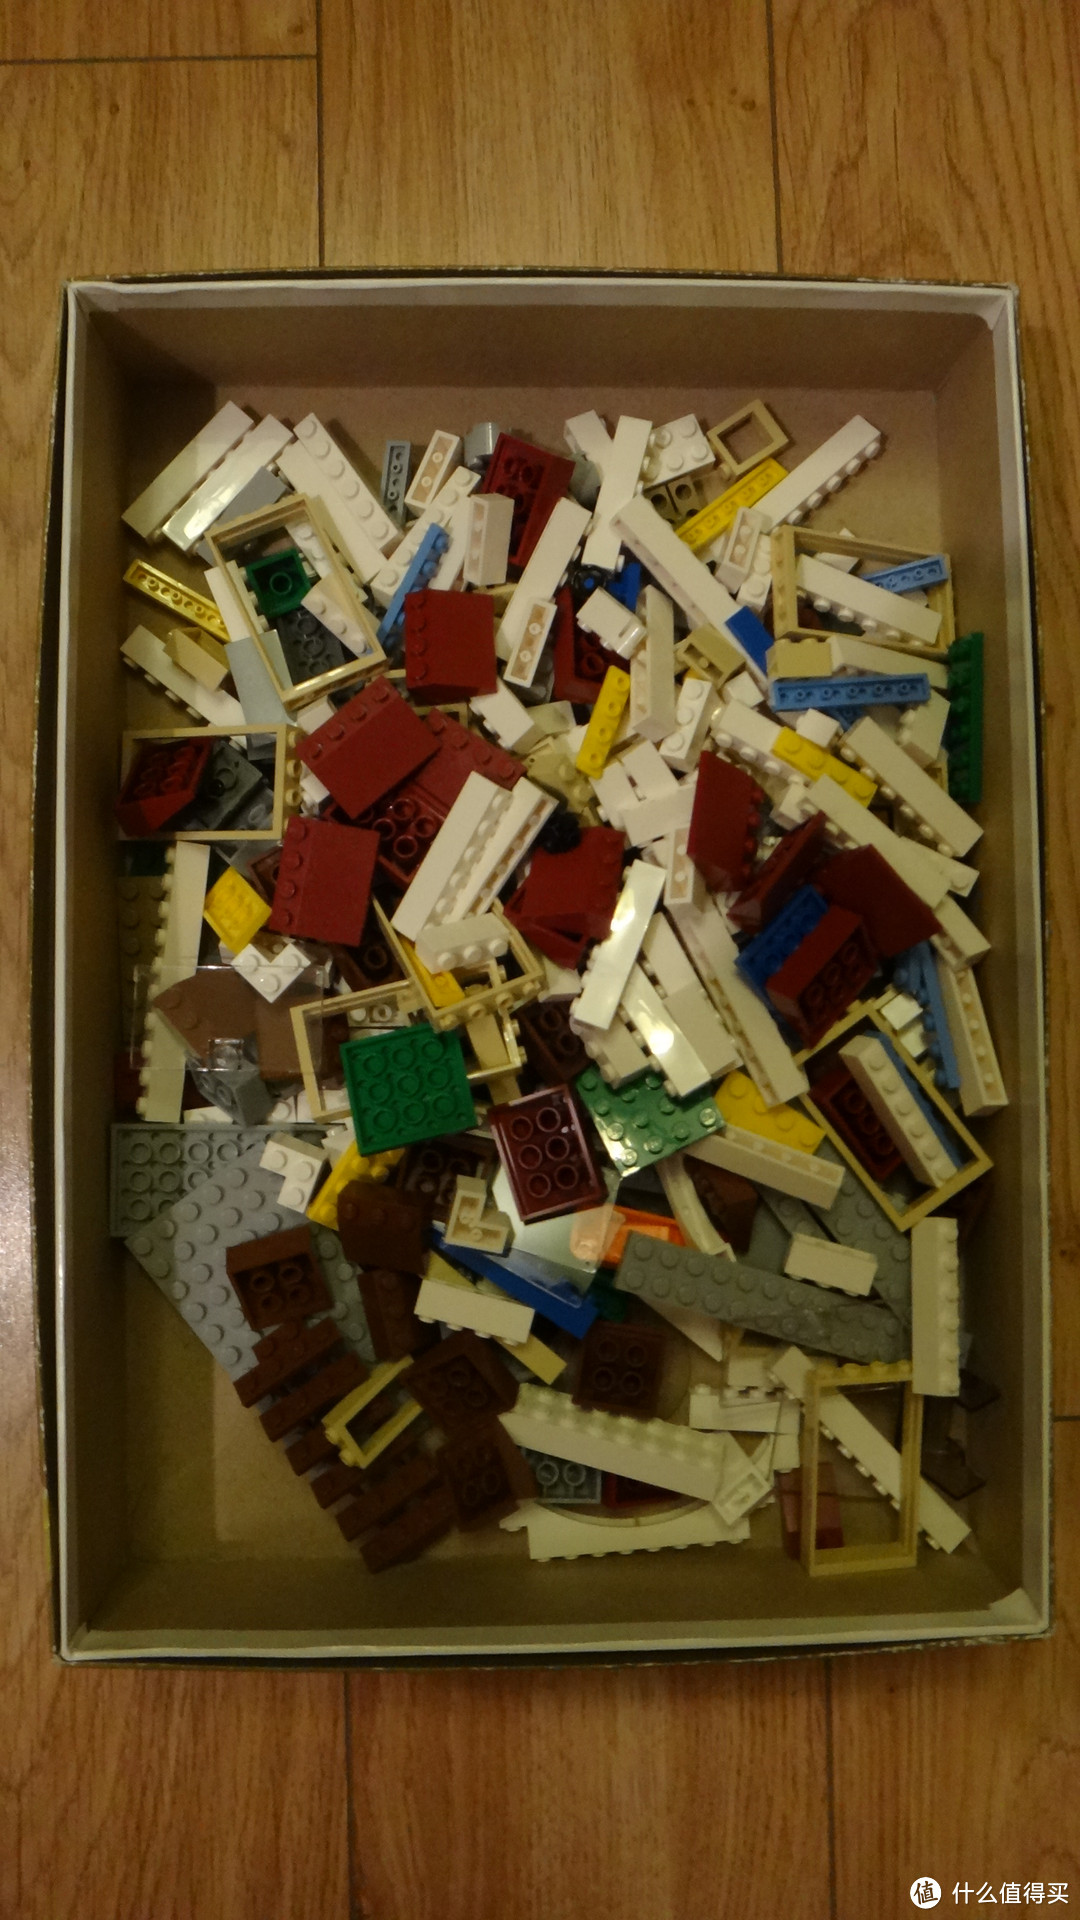 给我一个温暖的家：LEGO 乐高 创意百变组 温馨家庭 31012